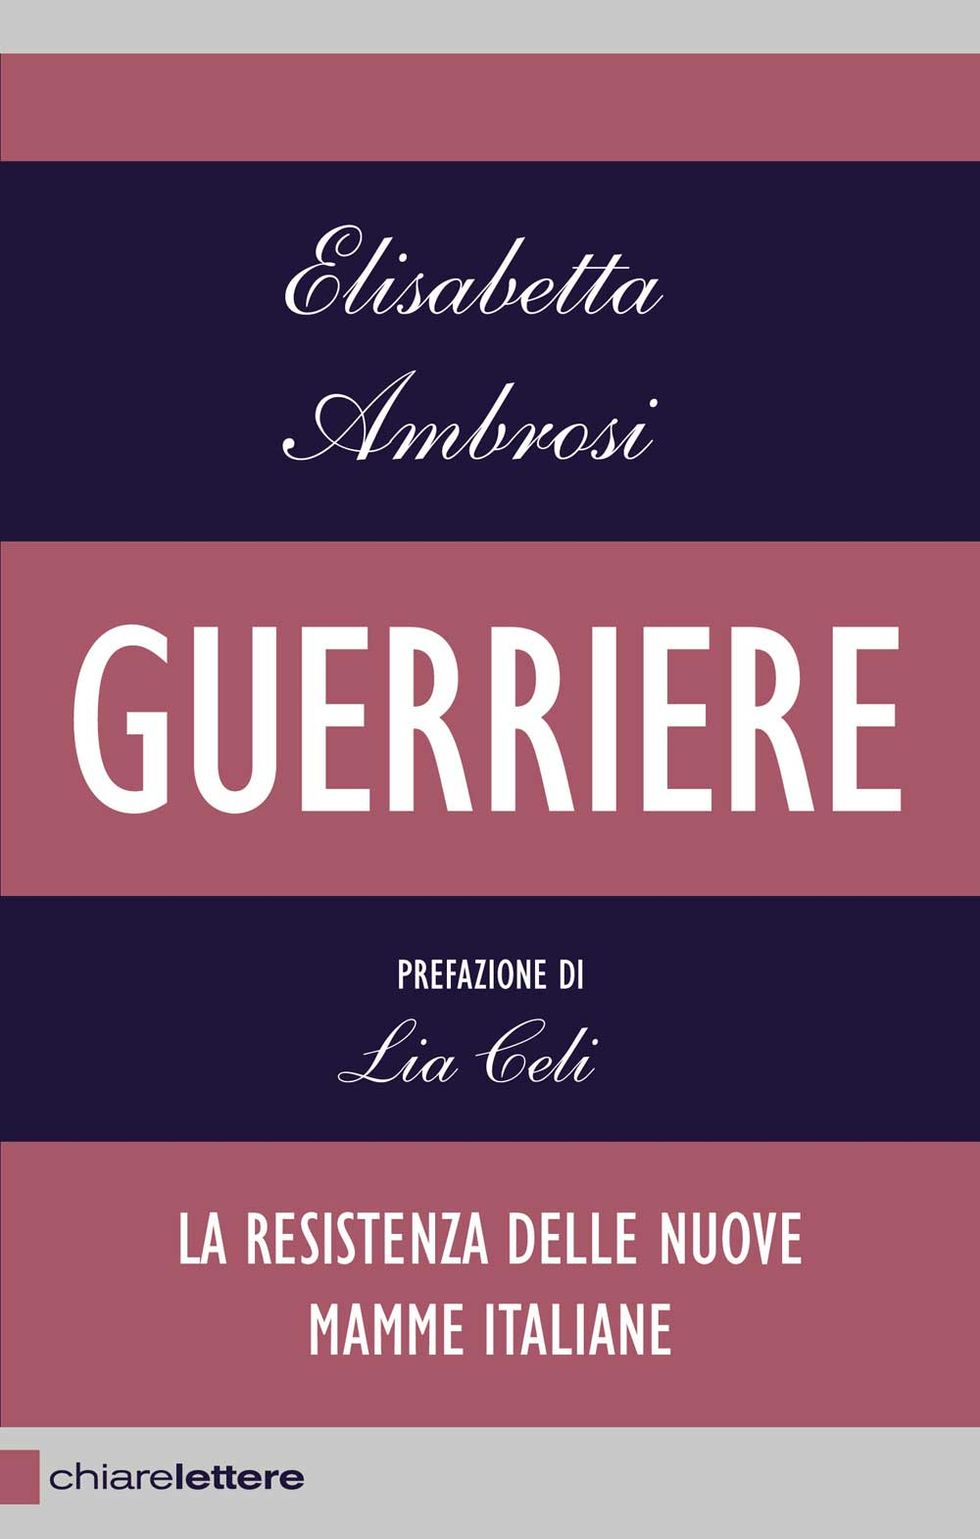 Elisabetta Ambrosi, "Guerriere": la resistenza delle nuove mamme